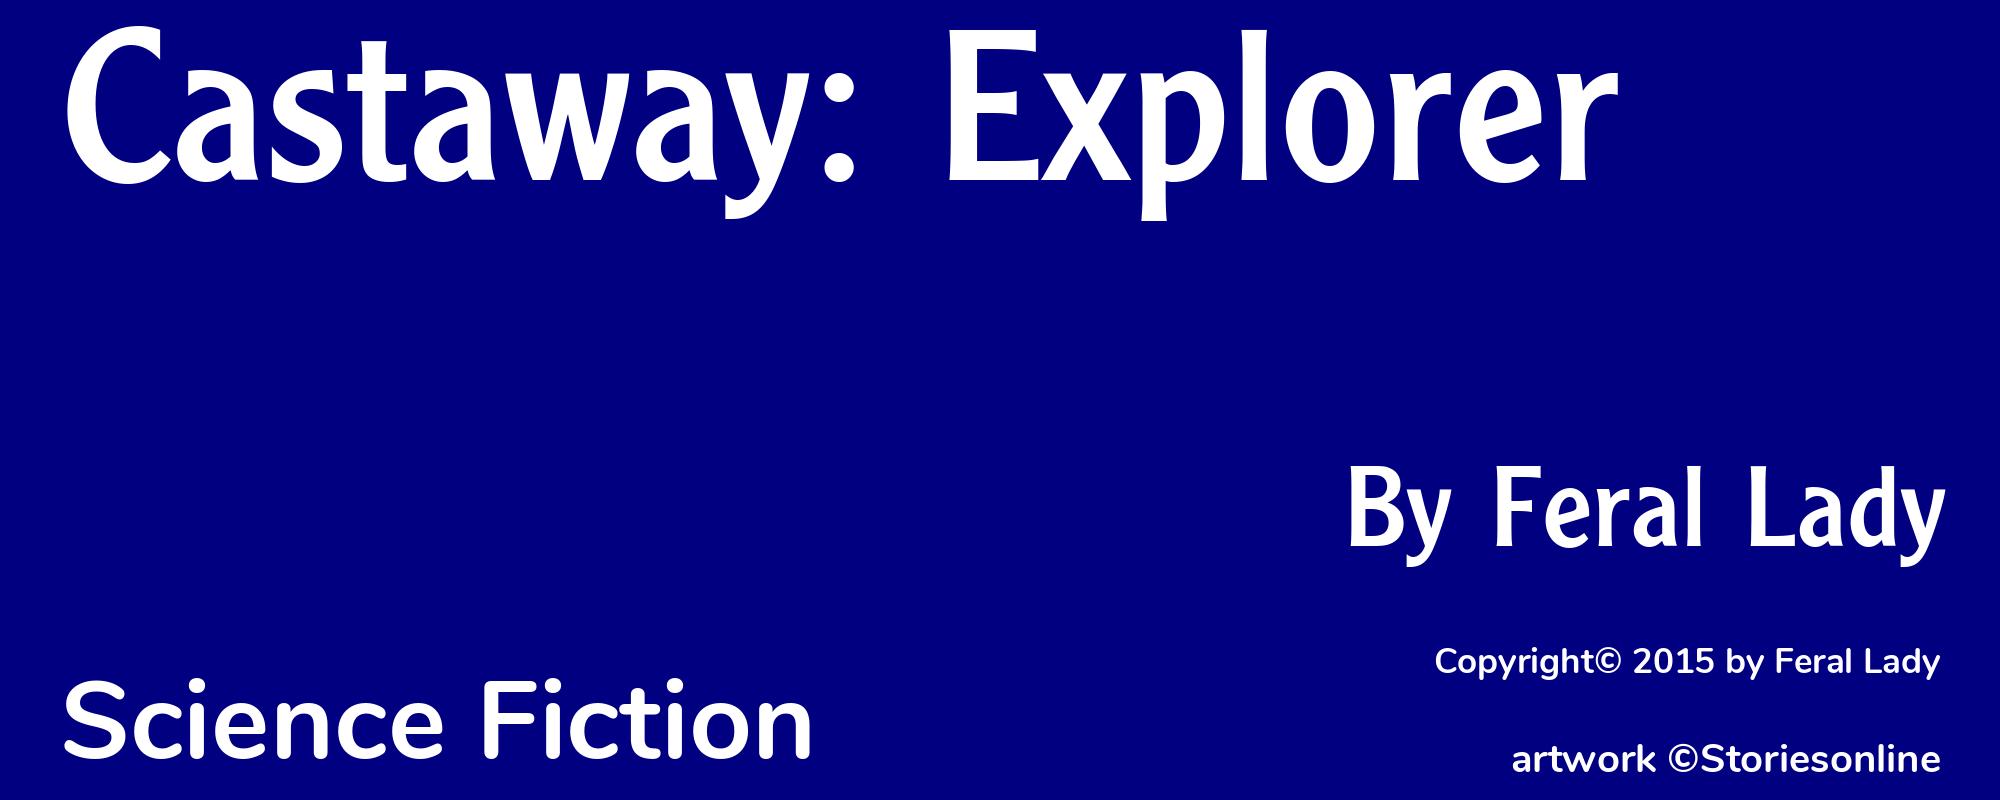 Castaway: Explorer - Cover